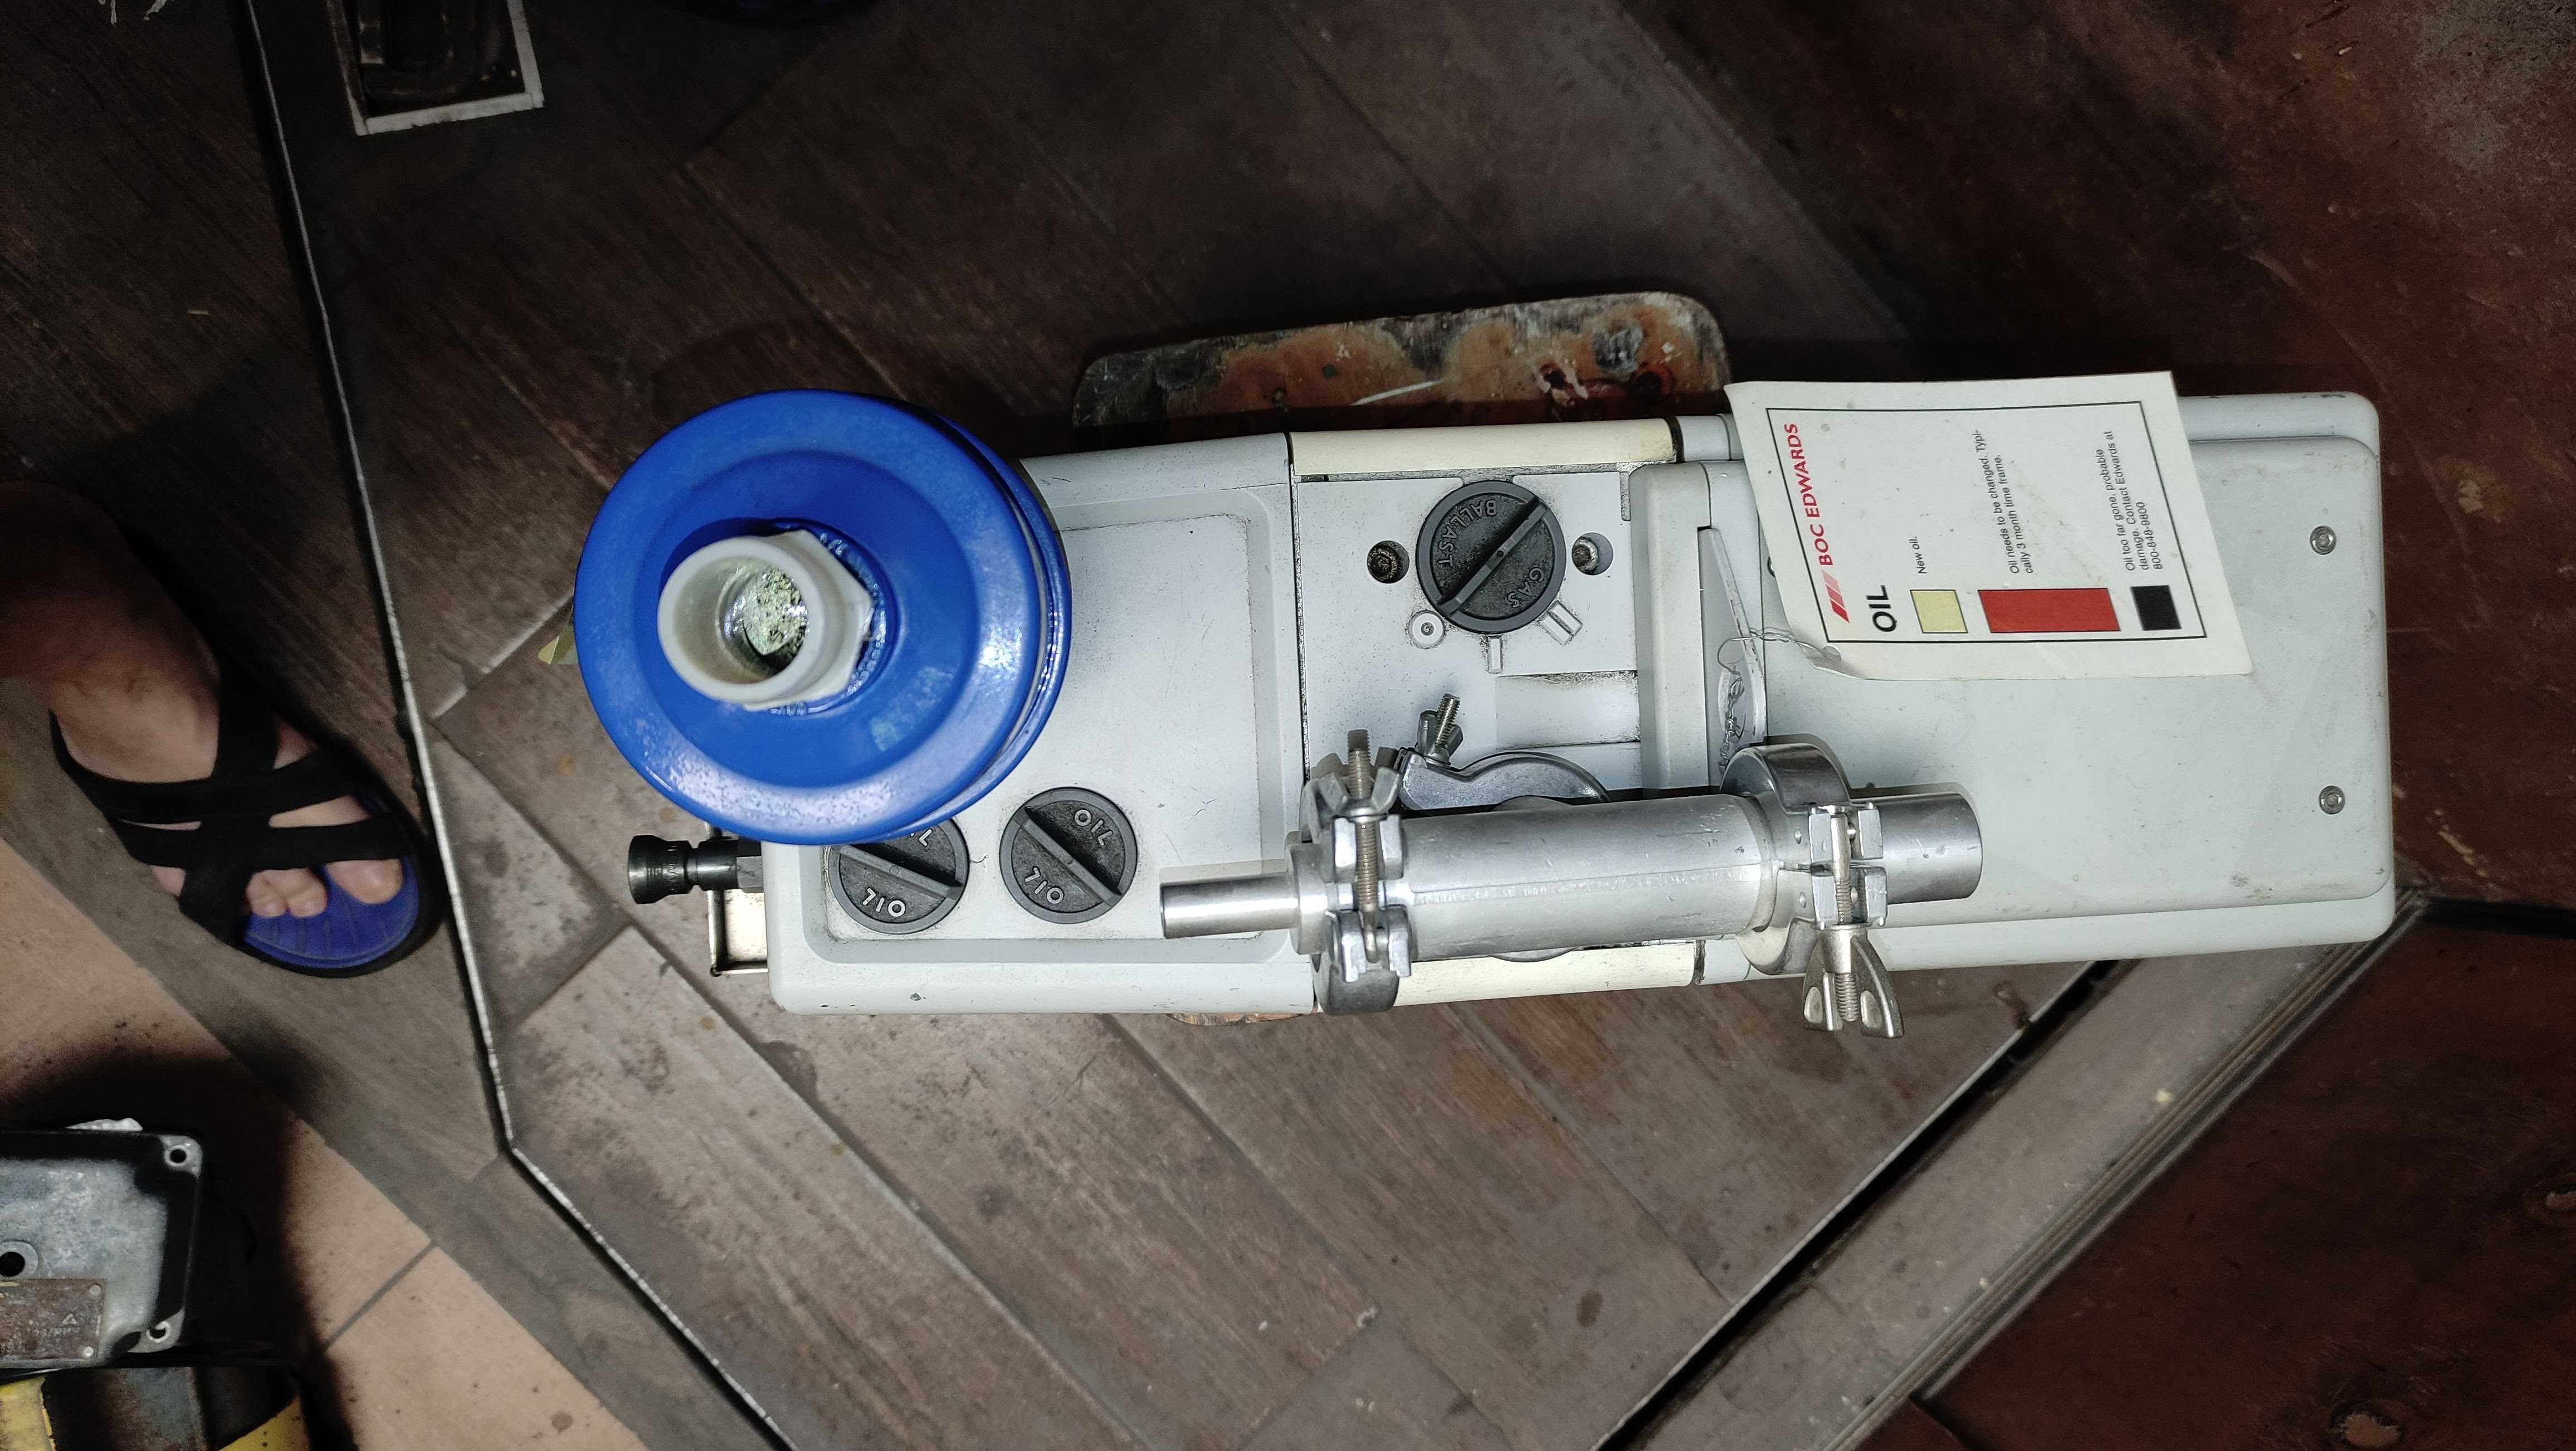 Вакуумный насос Edwards RV8 220V,50Hz VACUUM pump